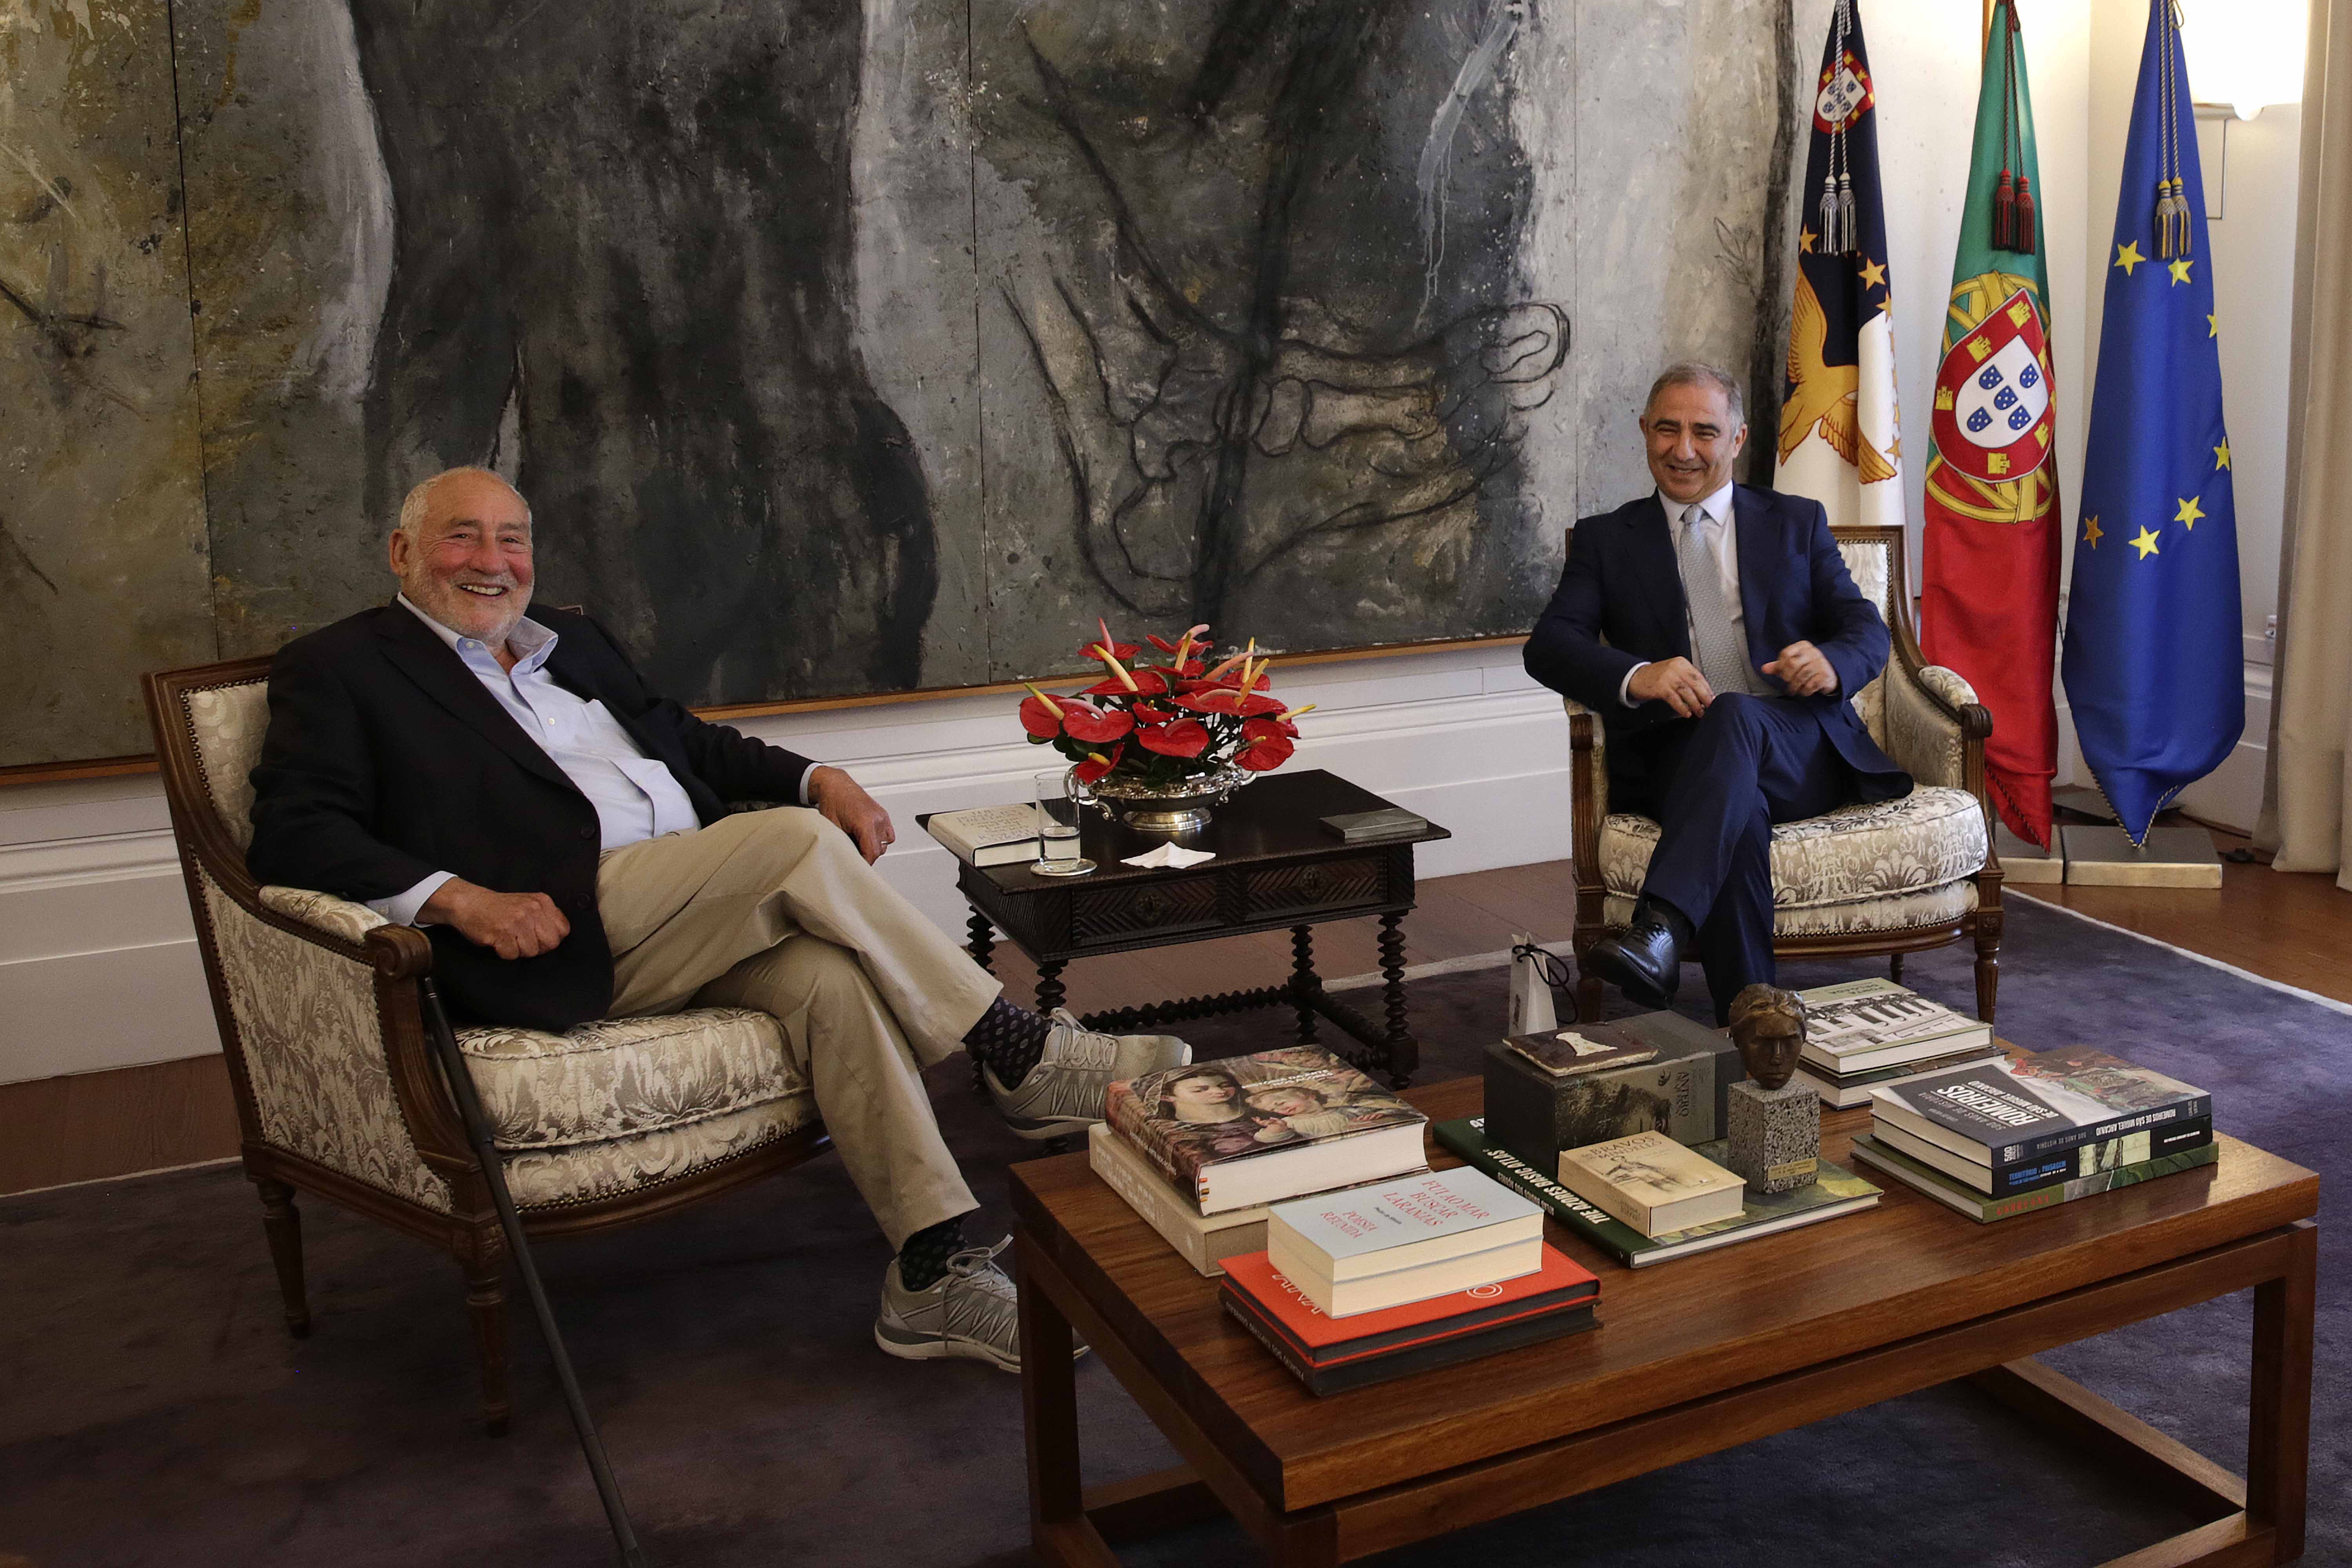 José Manuel Bolieiro recebeu Joseph Stiglitz, Prémio Nobel da Economia em 2001